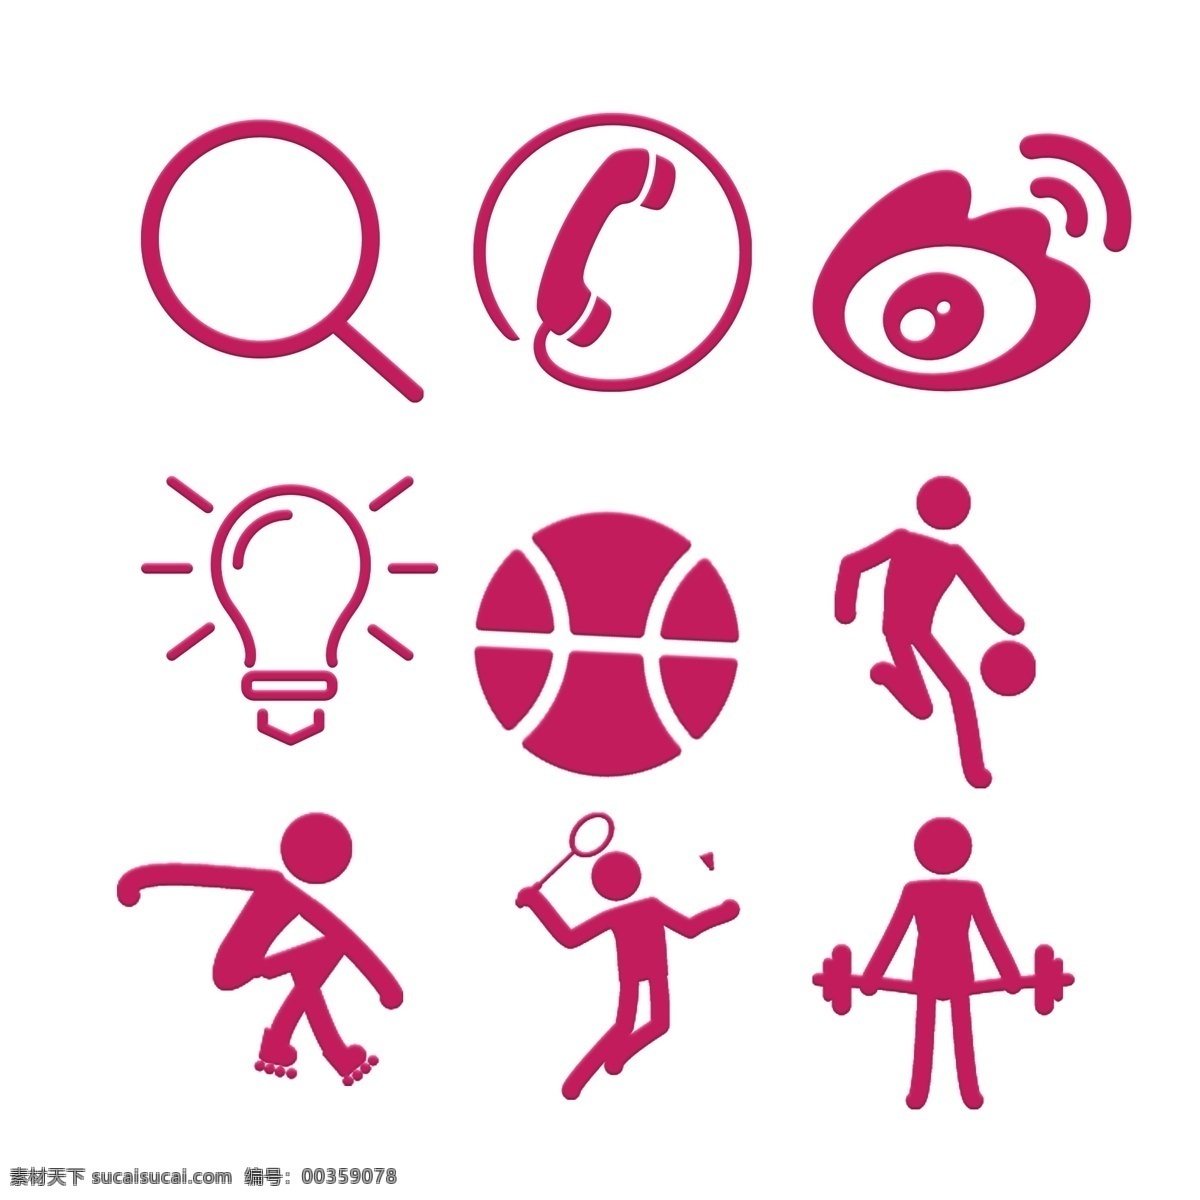 粉色 运动 图标素材 元素 篮球 举重 放大镜 电话 灯泡 微博 图标 免抠 双向 各式 日常 查看 生活 免扣png 高清免抠